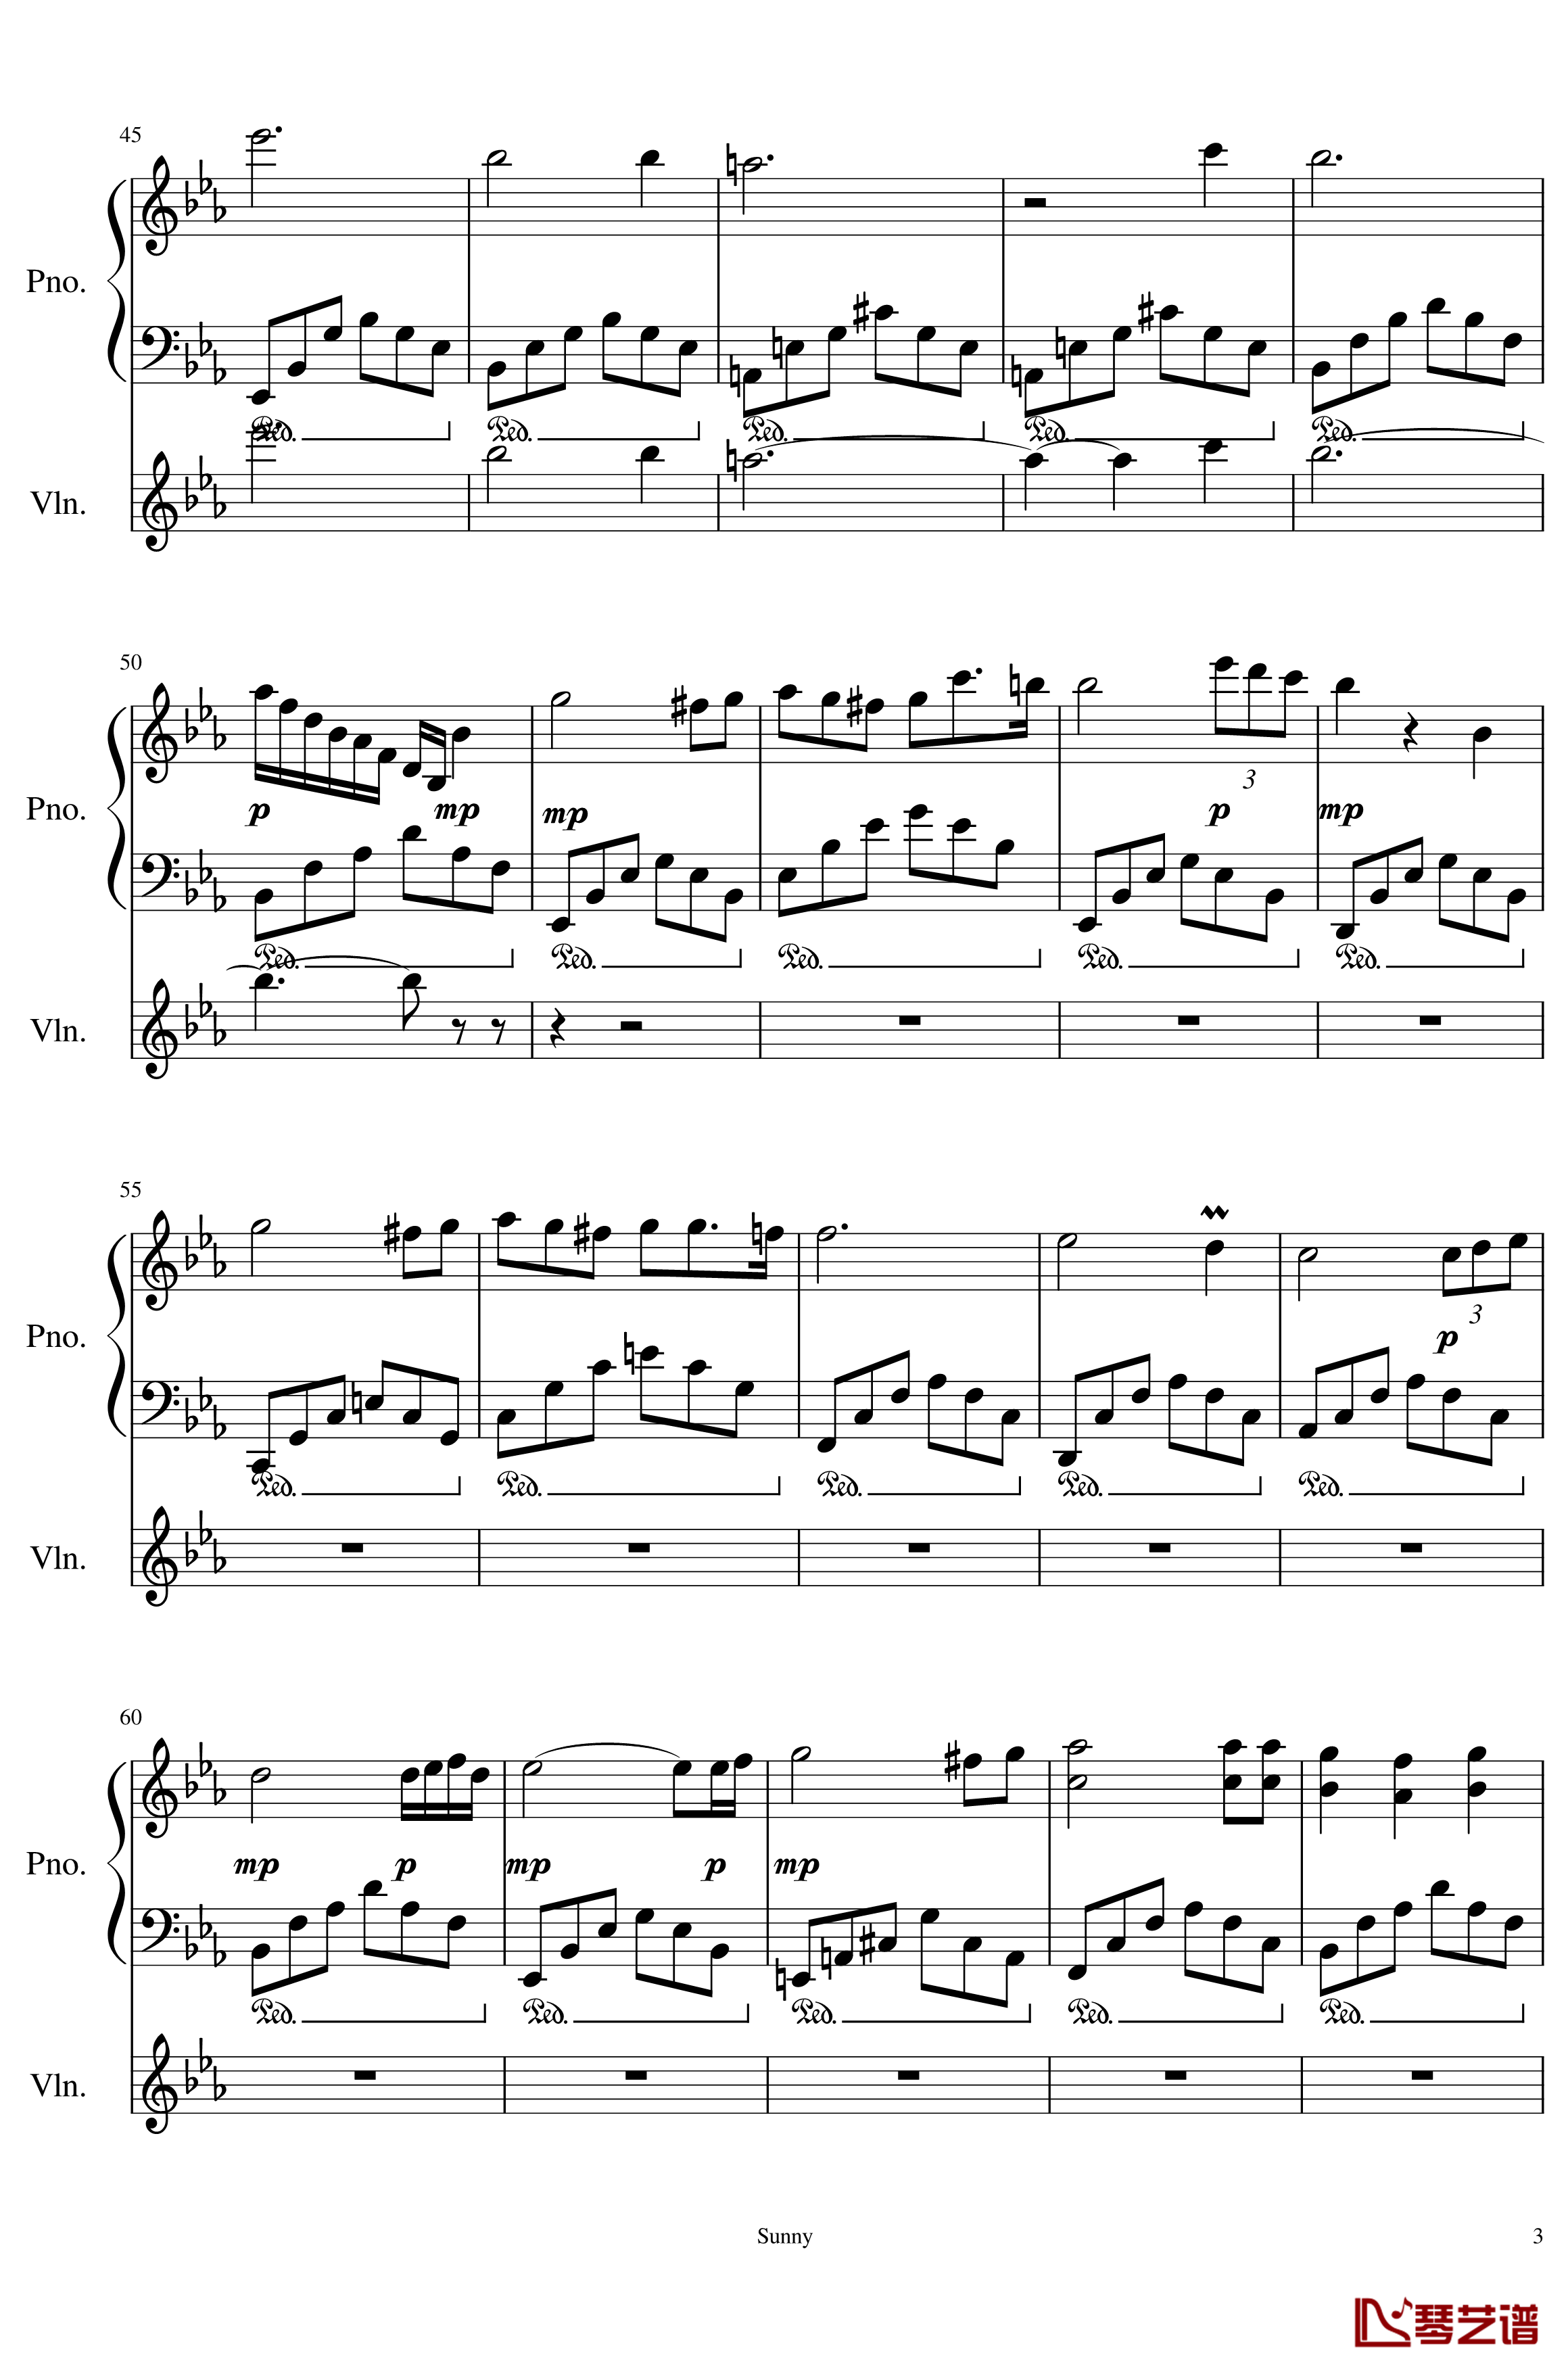 Op.1-1 钢琴谱-My First Music-SunnyAK473